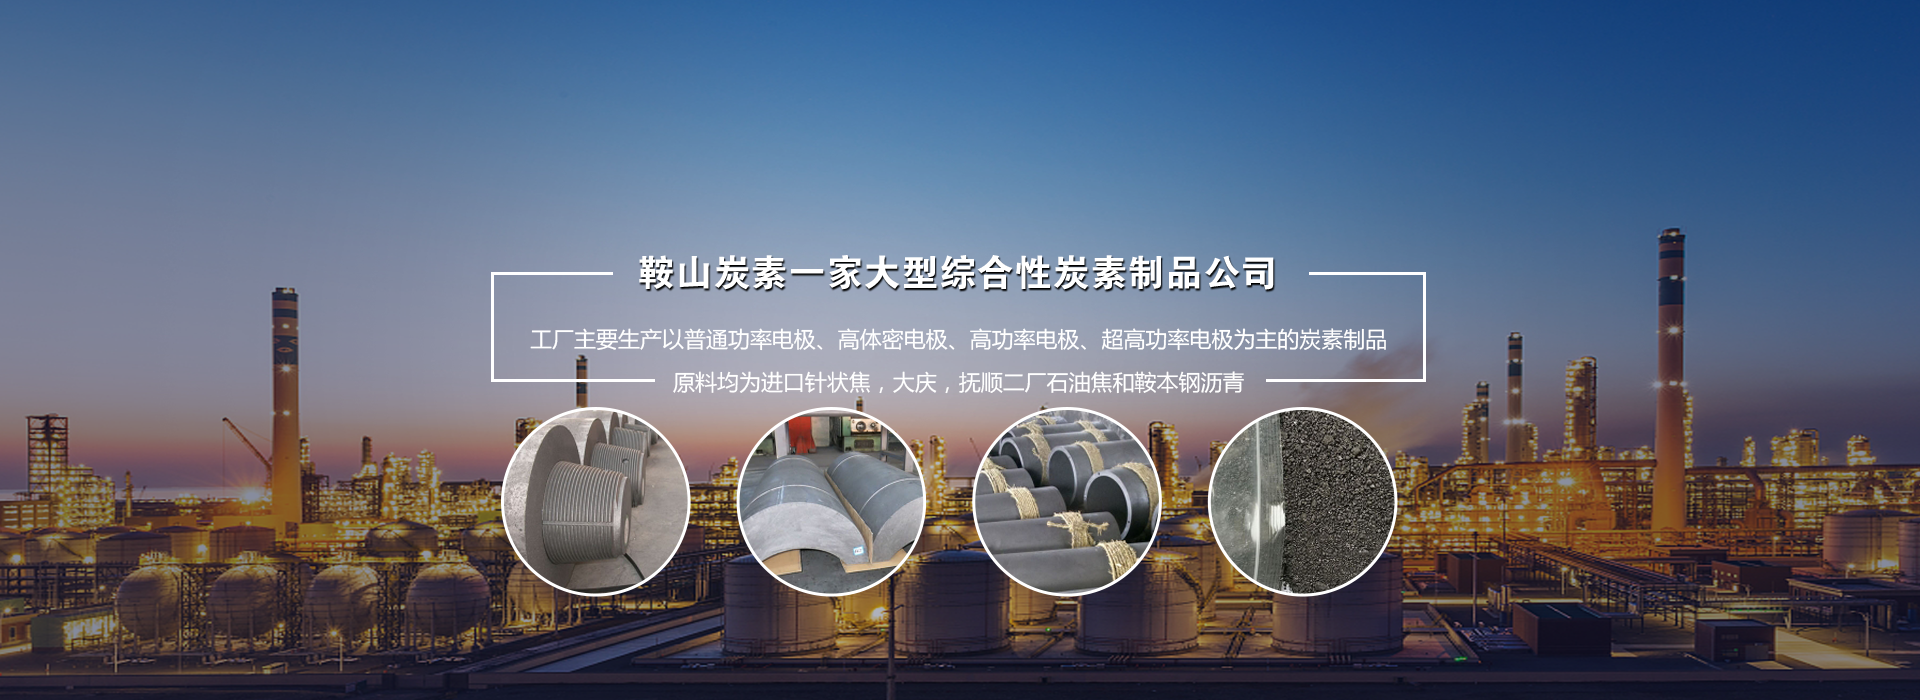 关于当前产品580彩票官方平台app·(中国)官方网站的成功案例等相关图片